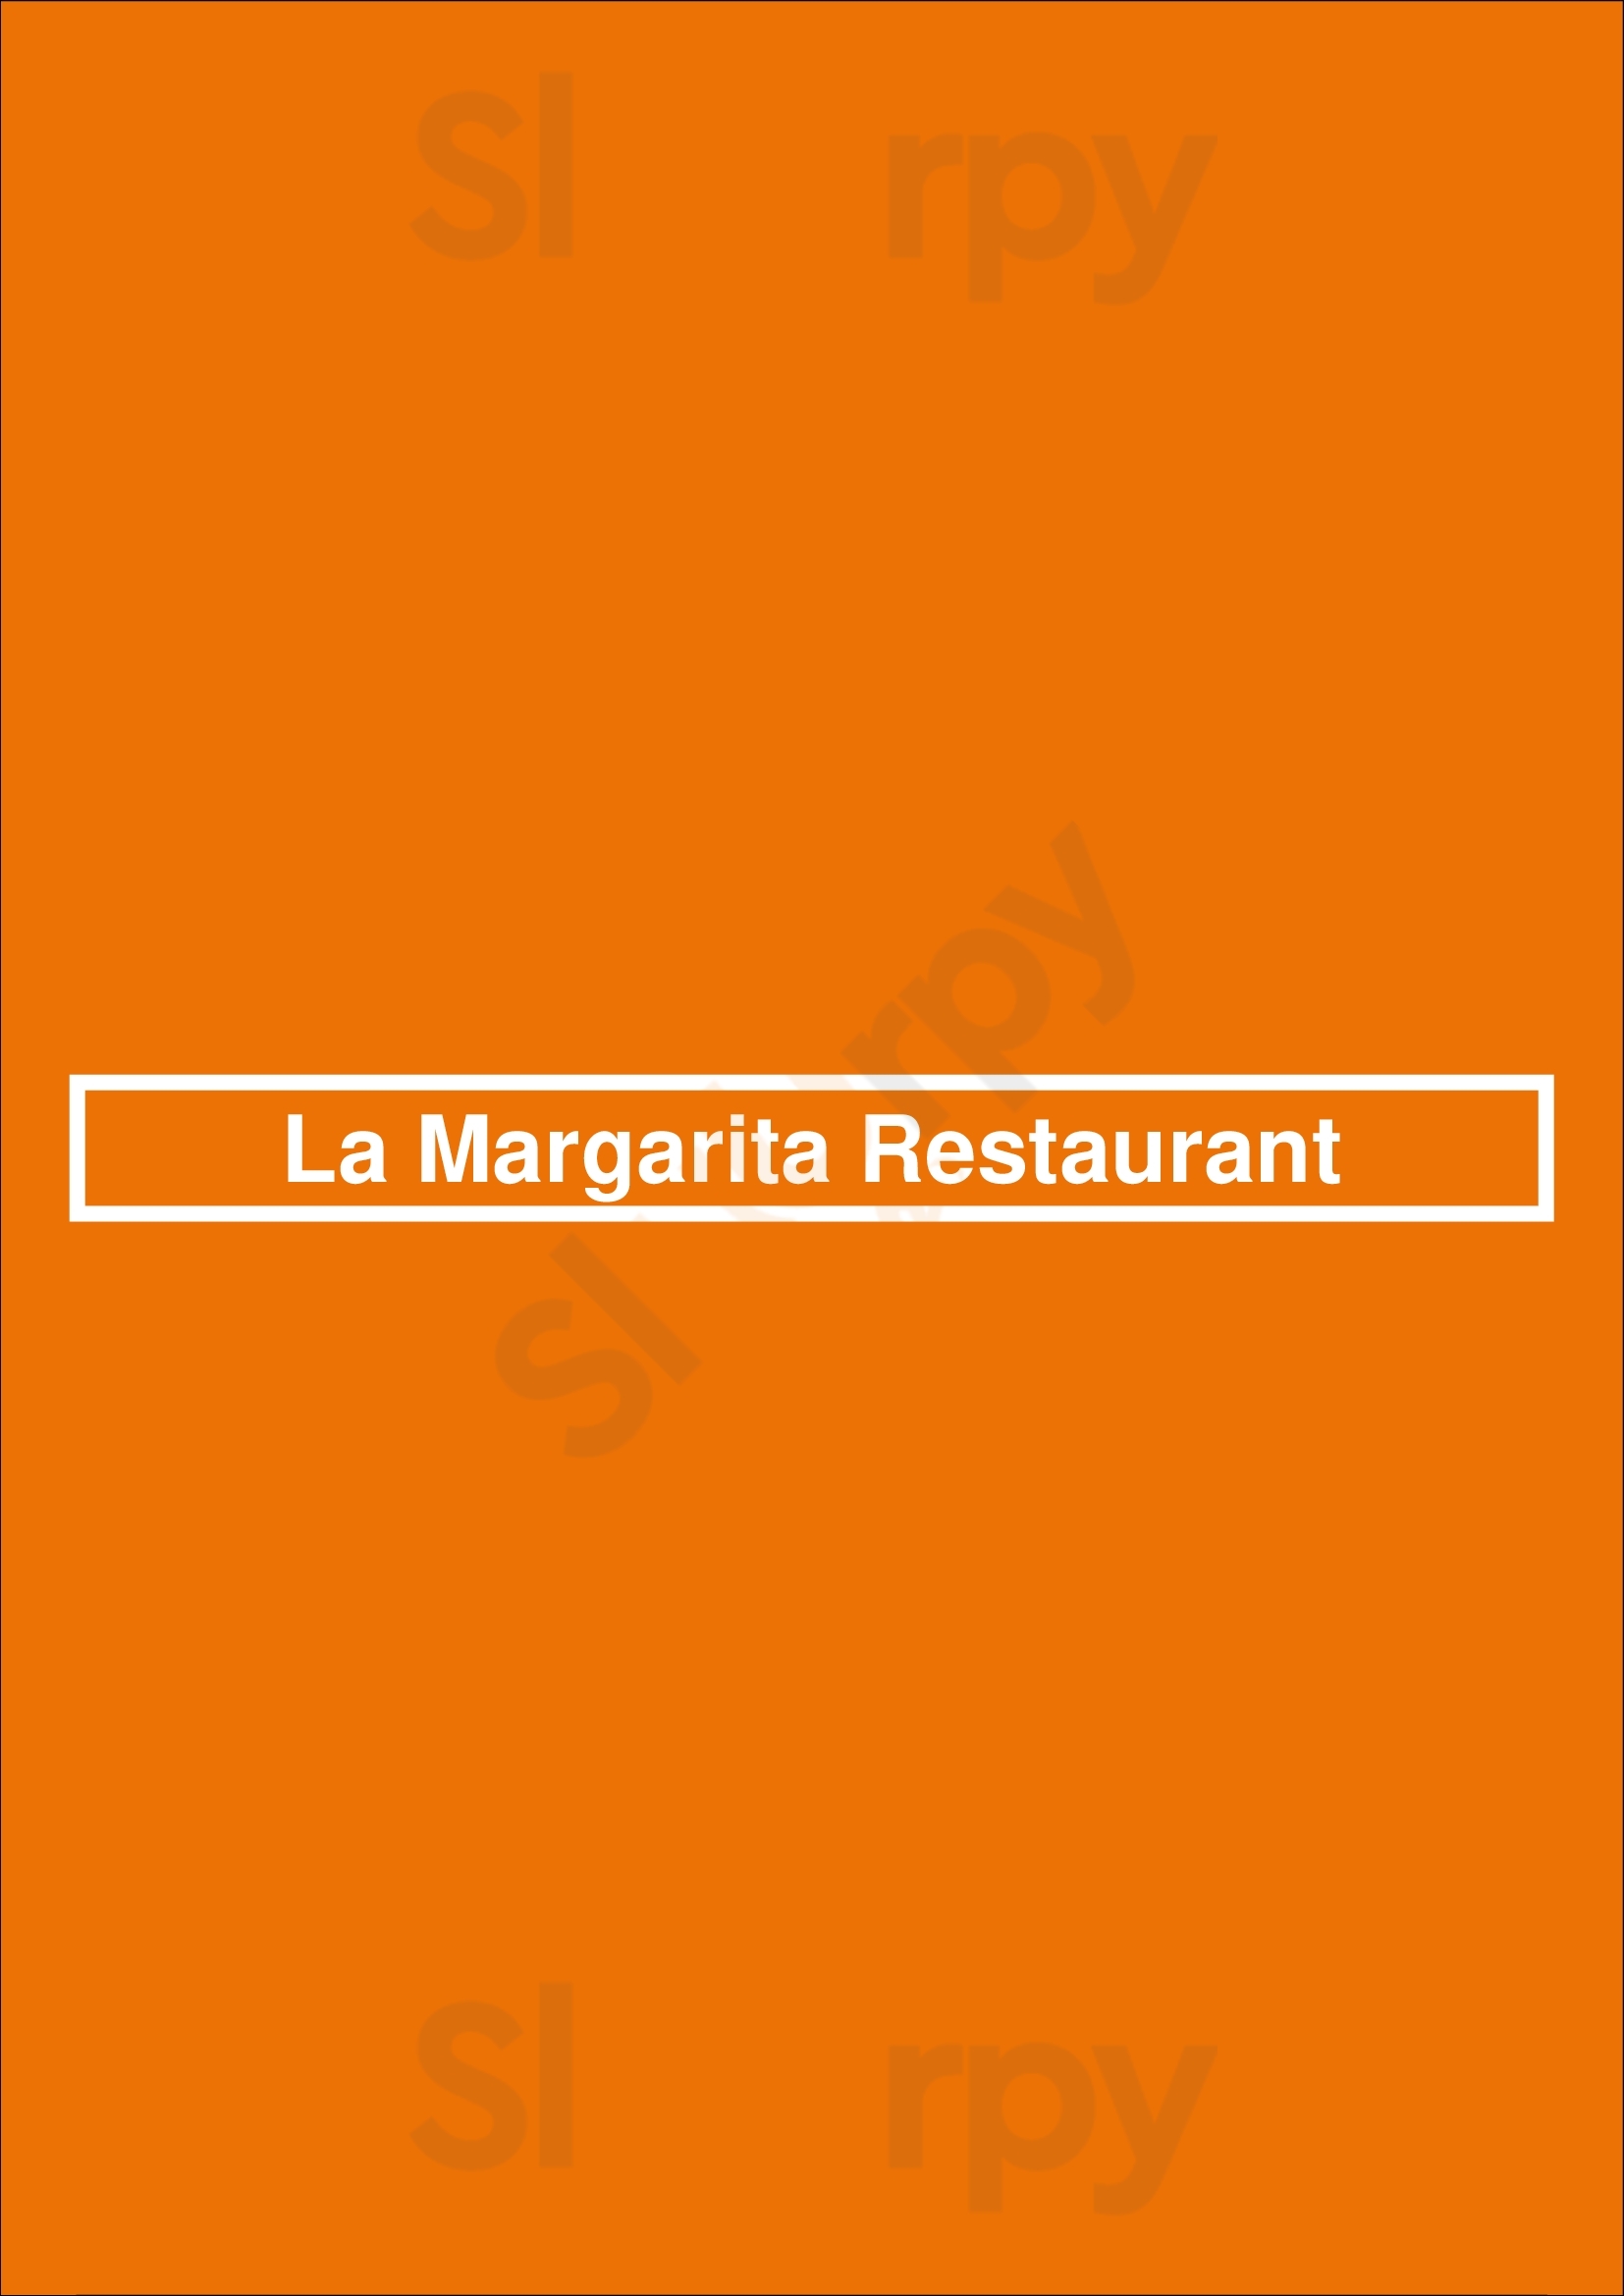 La Margarita Restaurant San Antonio Menu - 1